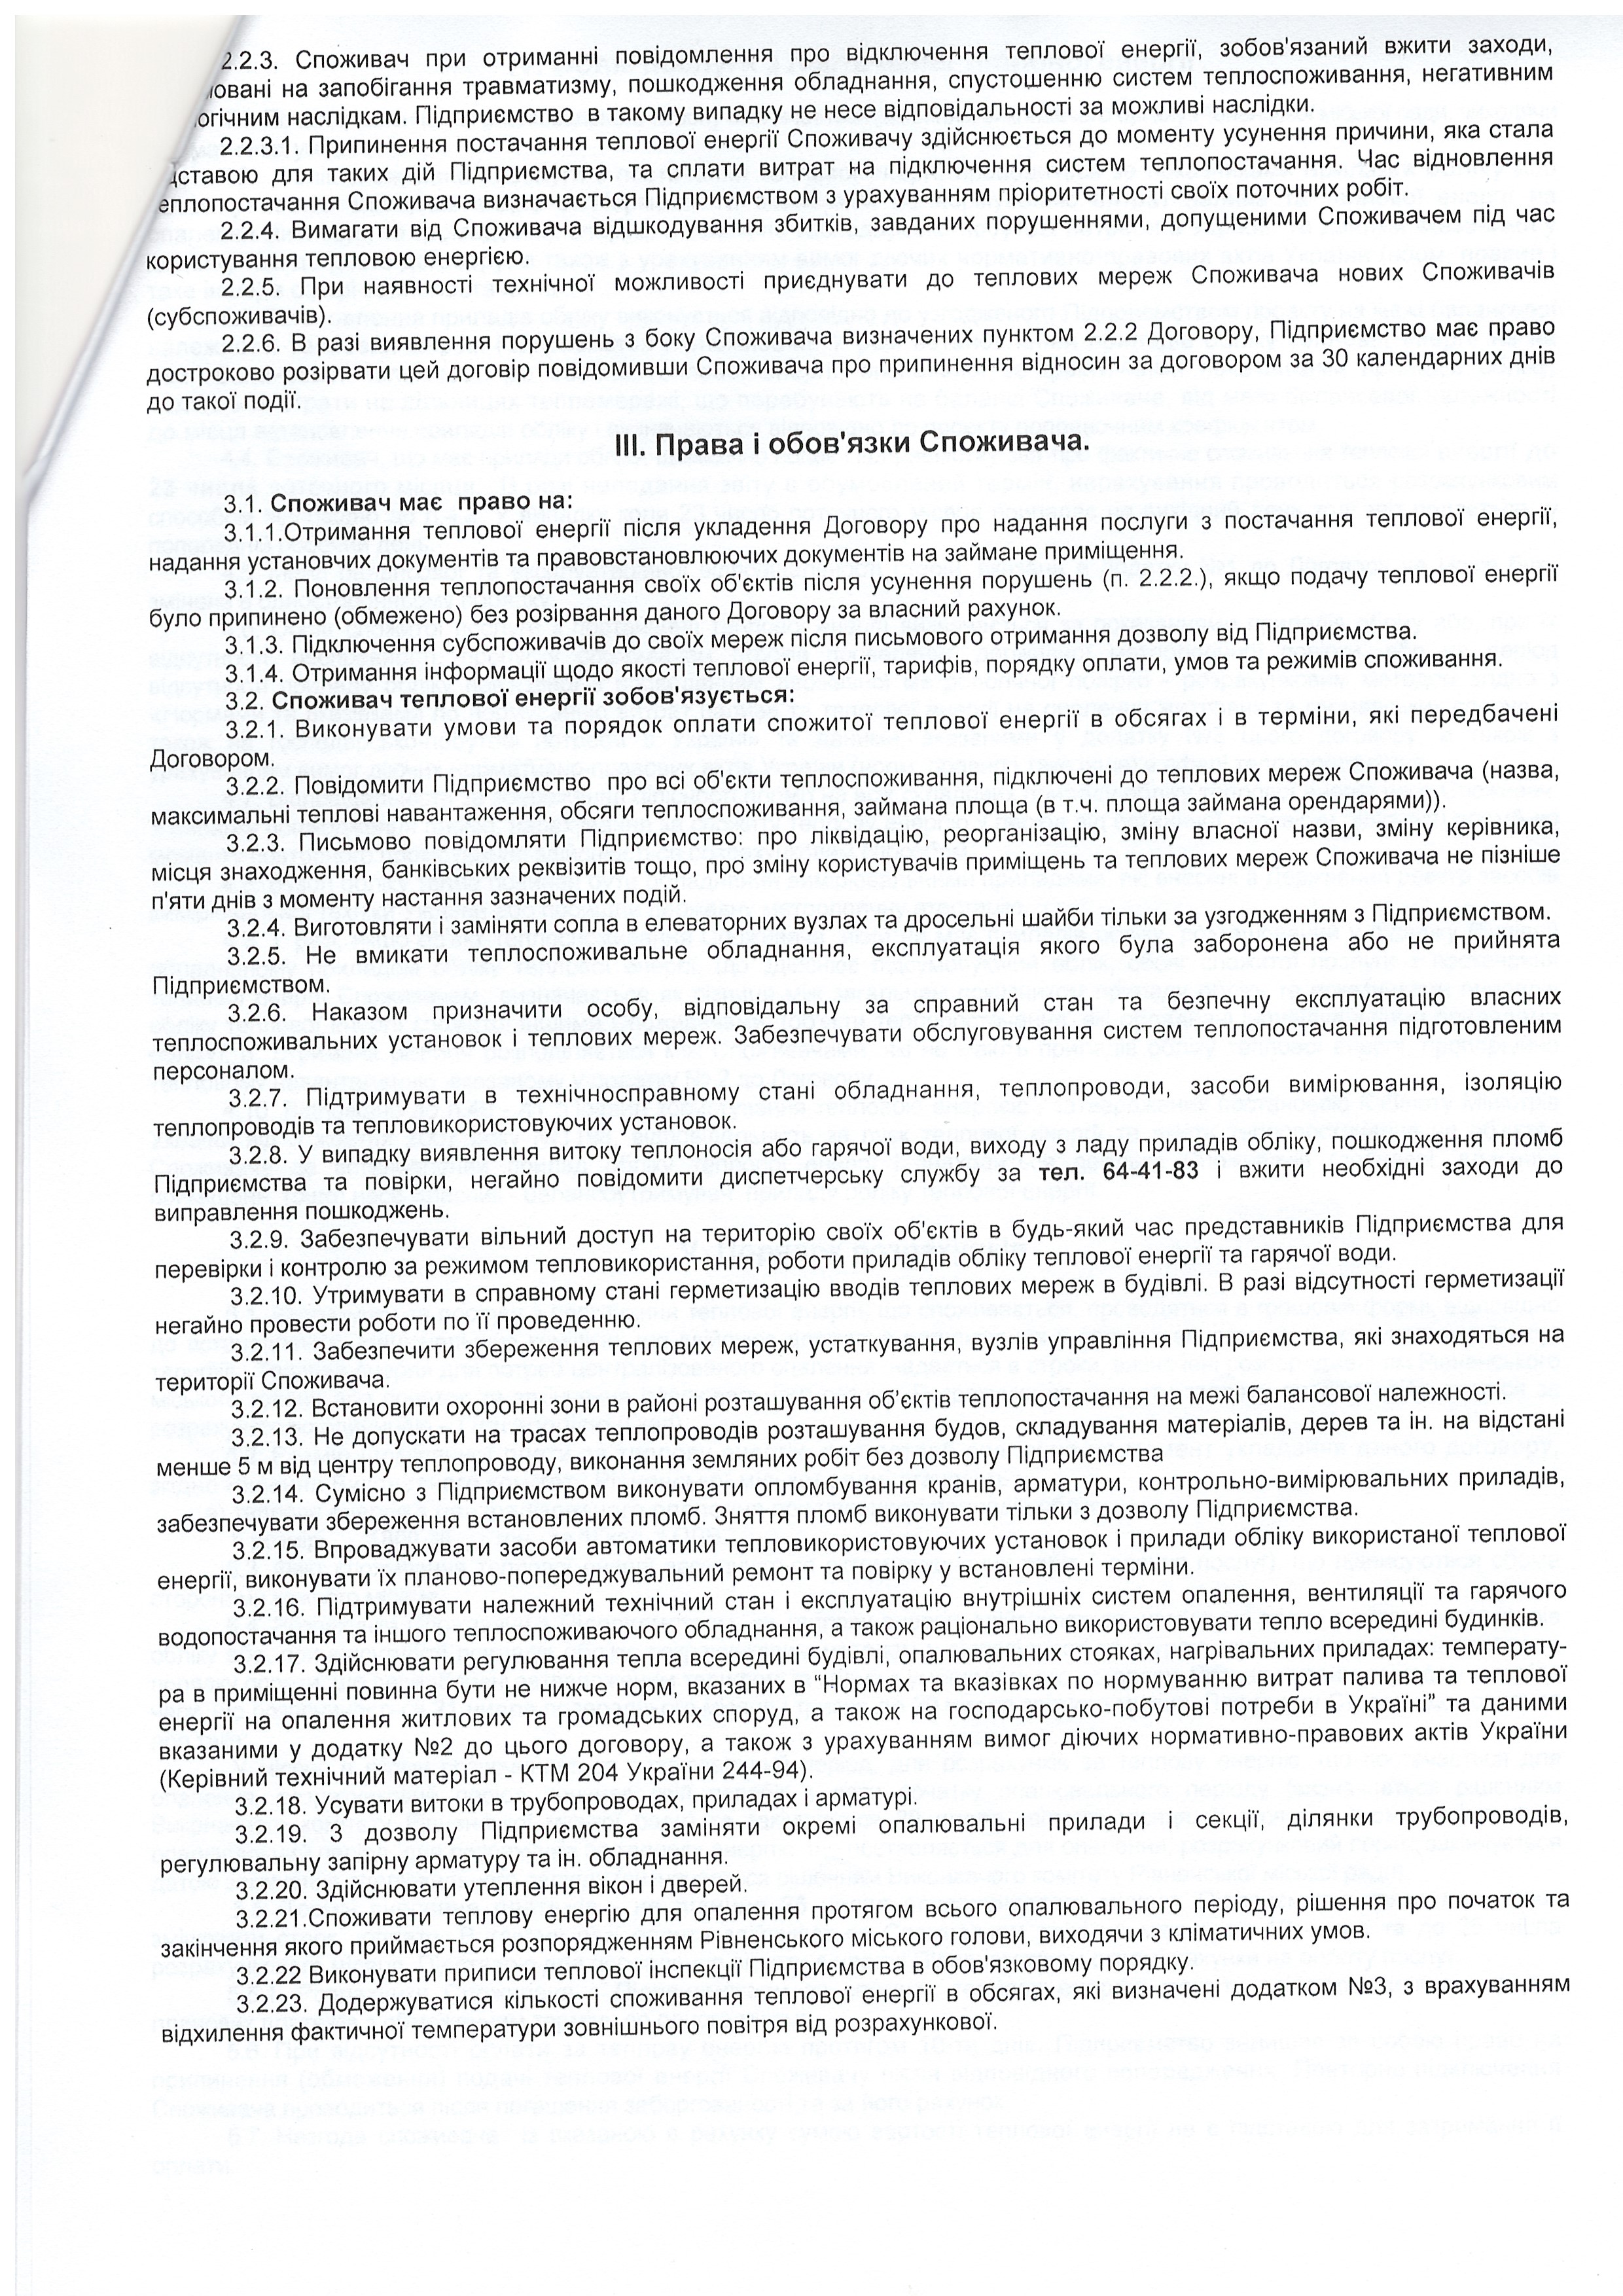 Договір №2035 про надання постуги з постачання теплової енергії ст.2